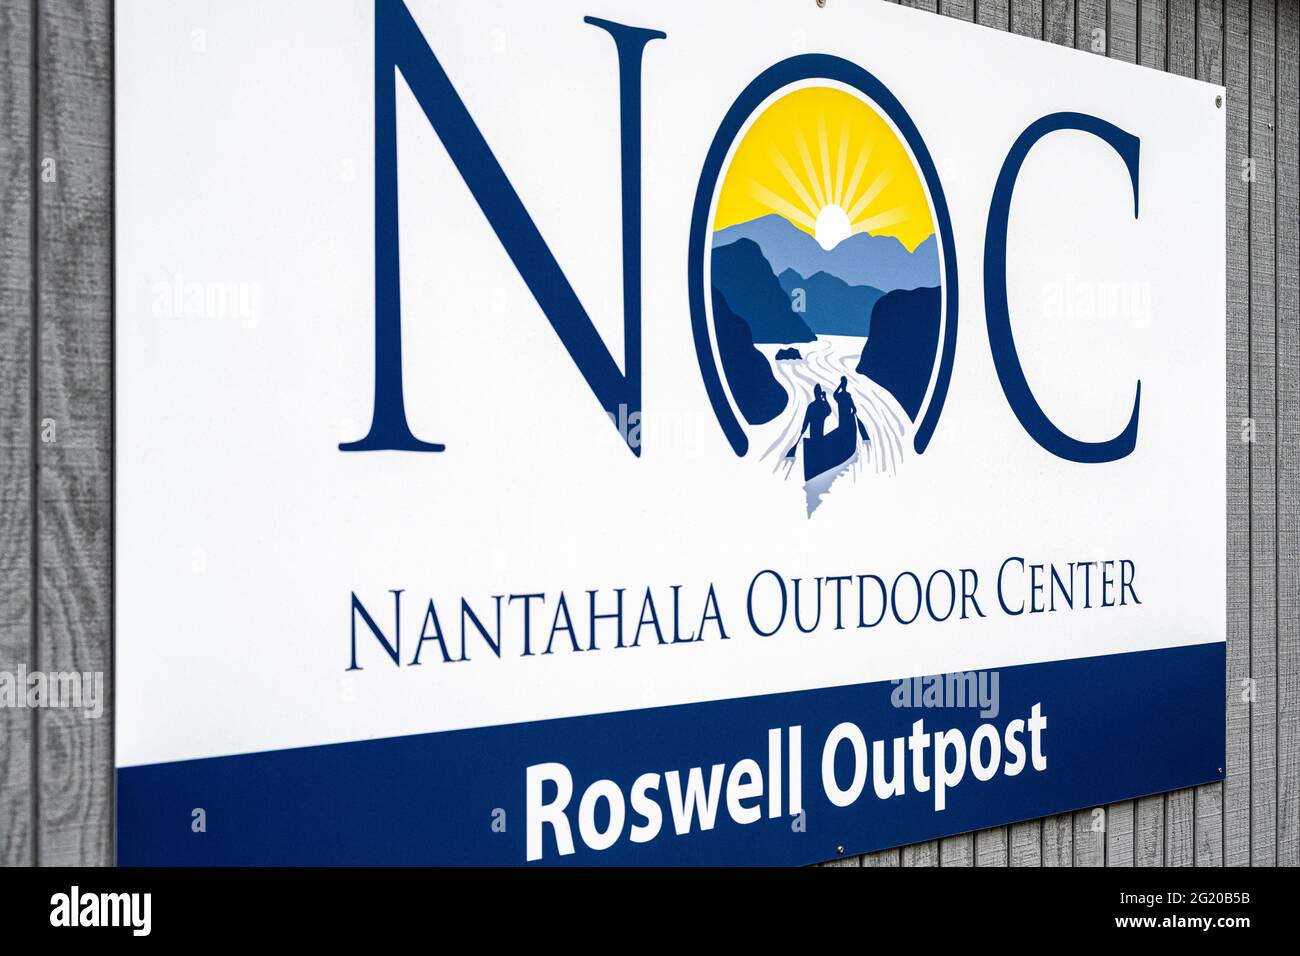 Nantahala Outdoor Center Roswell Outpost ofrece alquiler de kayaks y canoas para explorar el área recreativa nacional del río Chattahoochee. (EE. UU.) Foto de stock